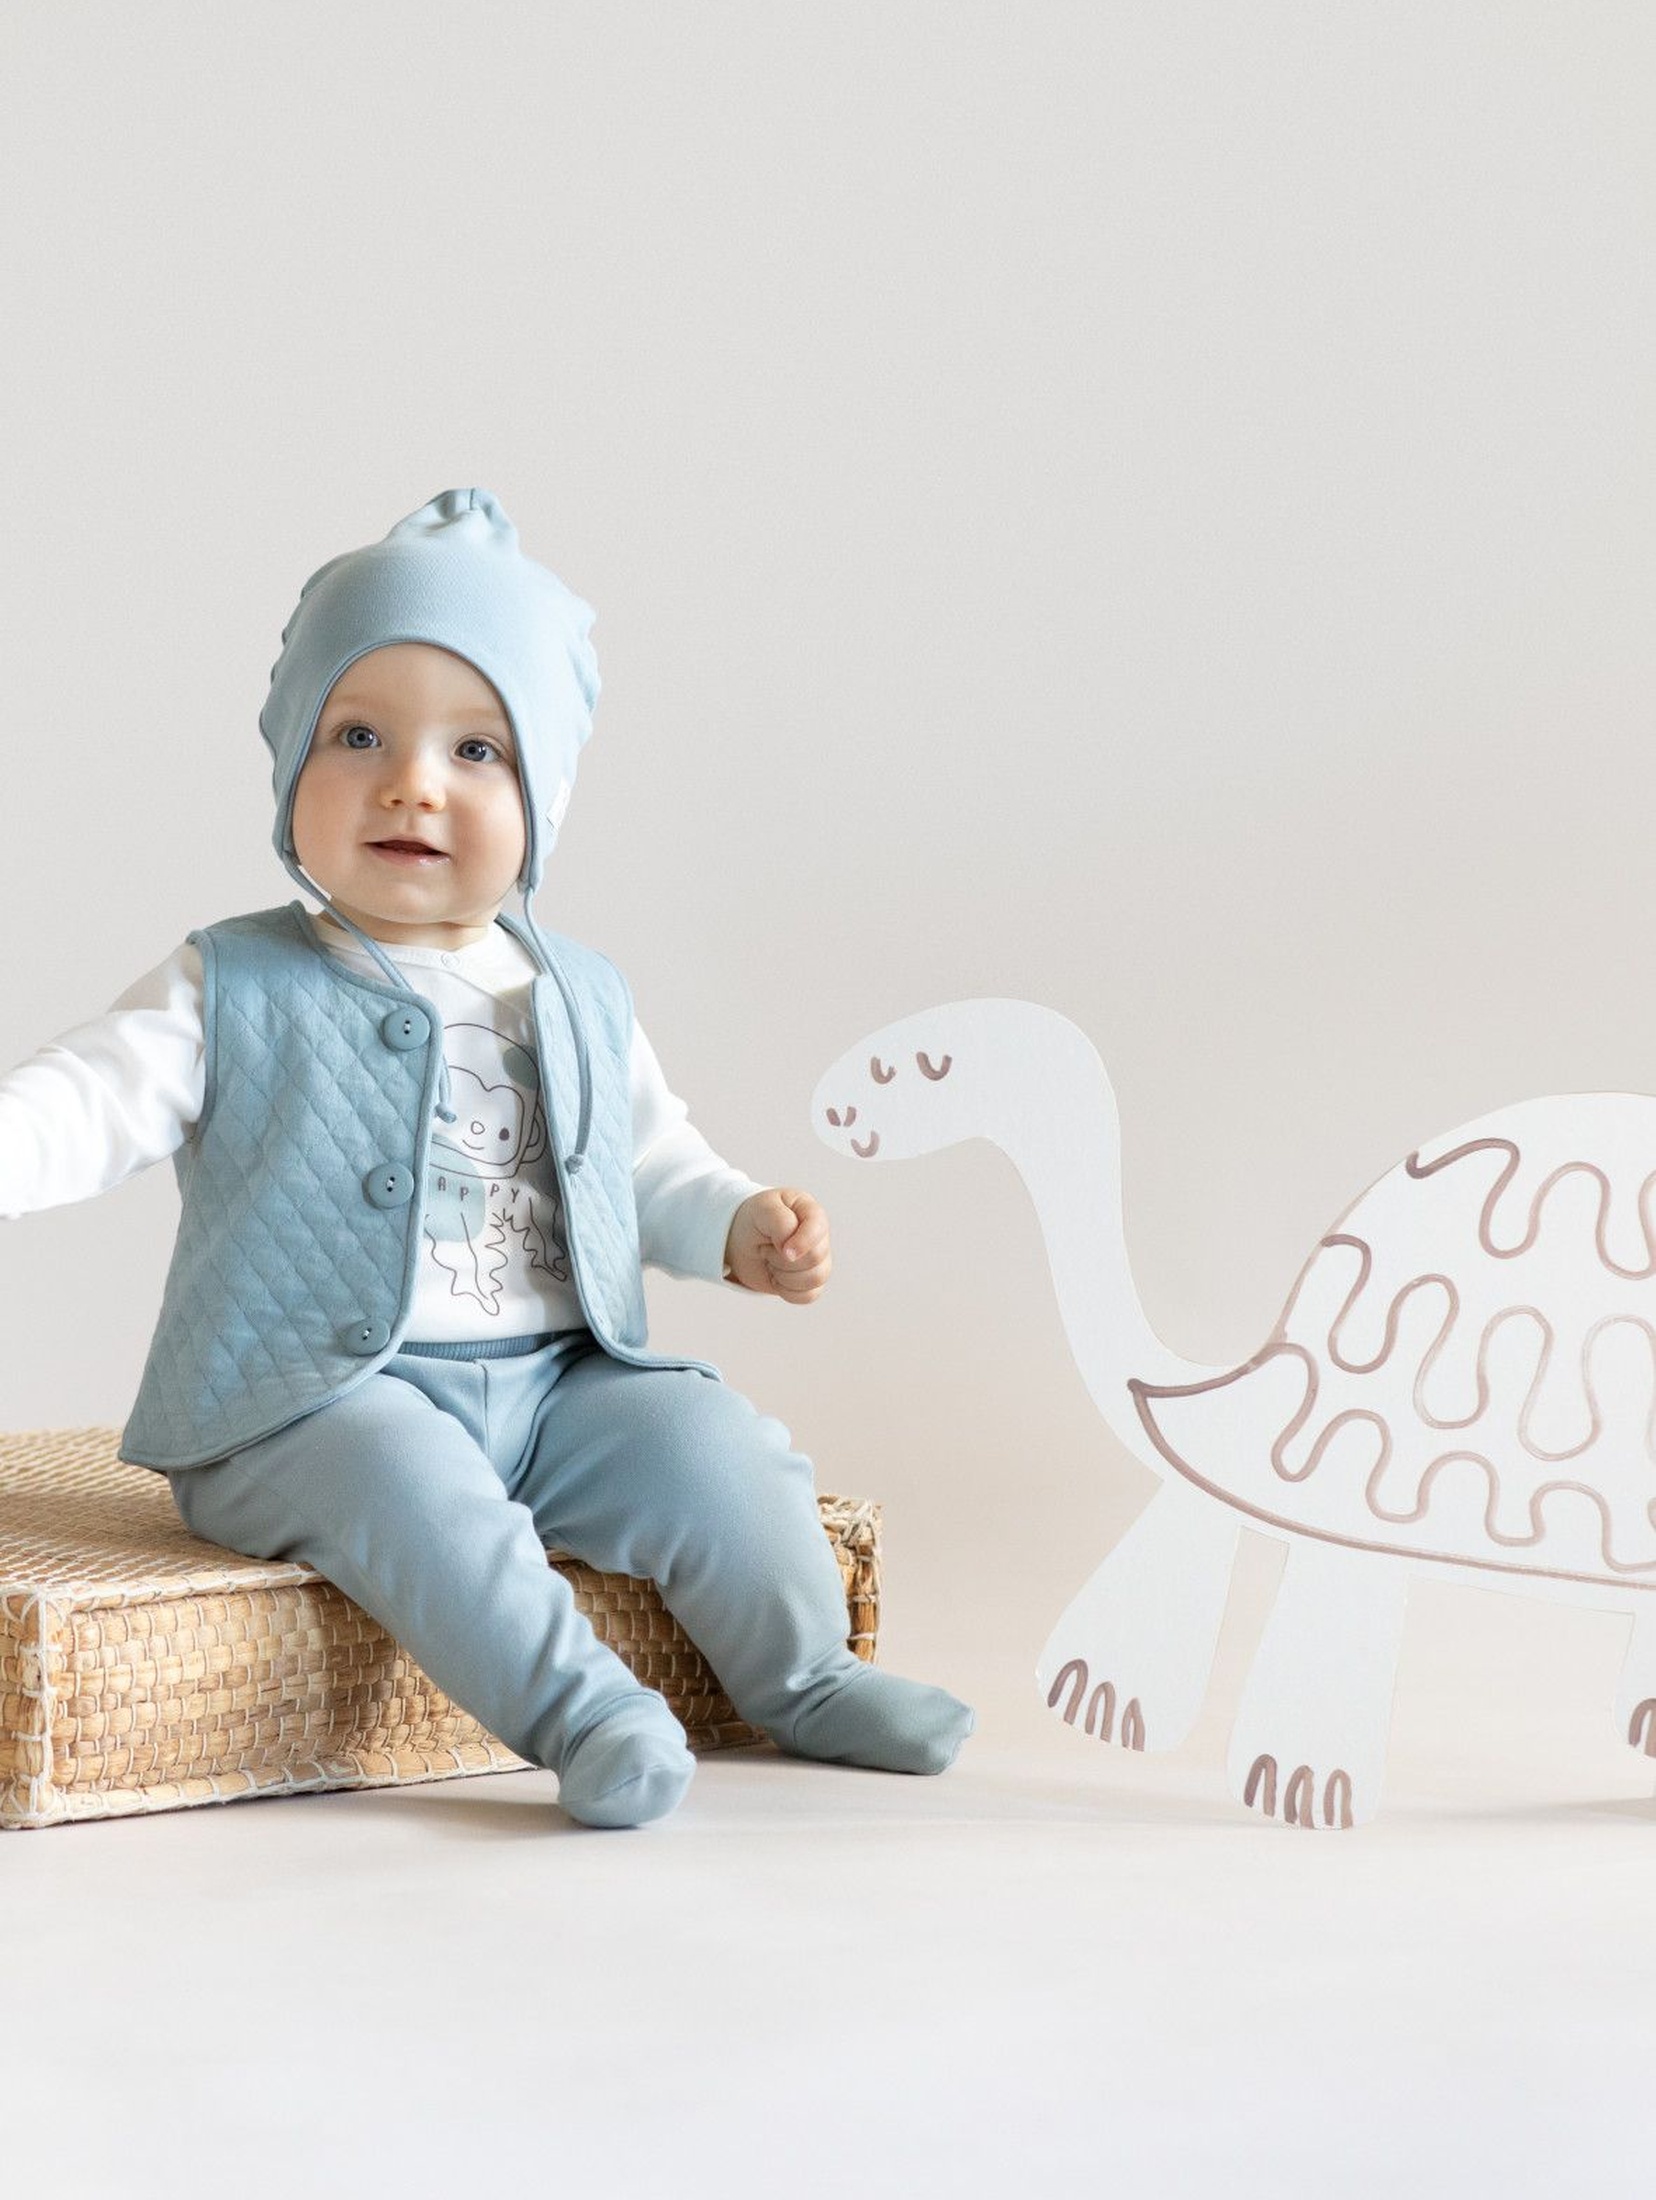 Bawełniana czapka niemowlęca wiązana SLOW LIFE - niebieska